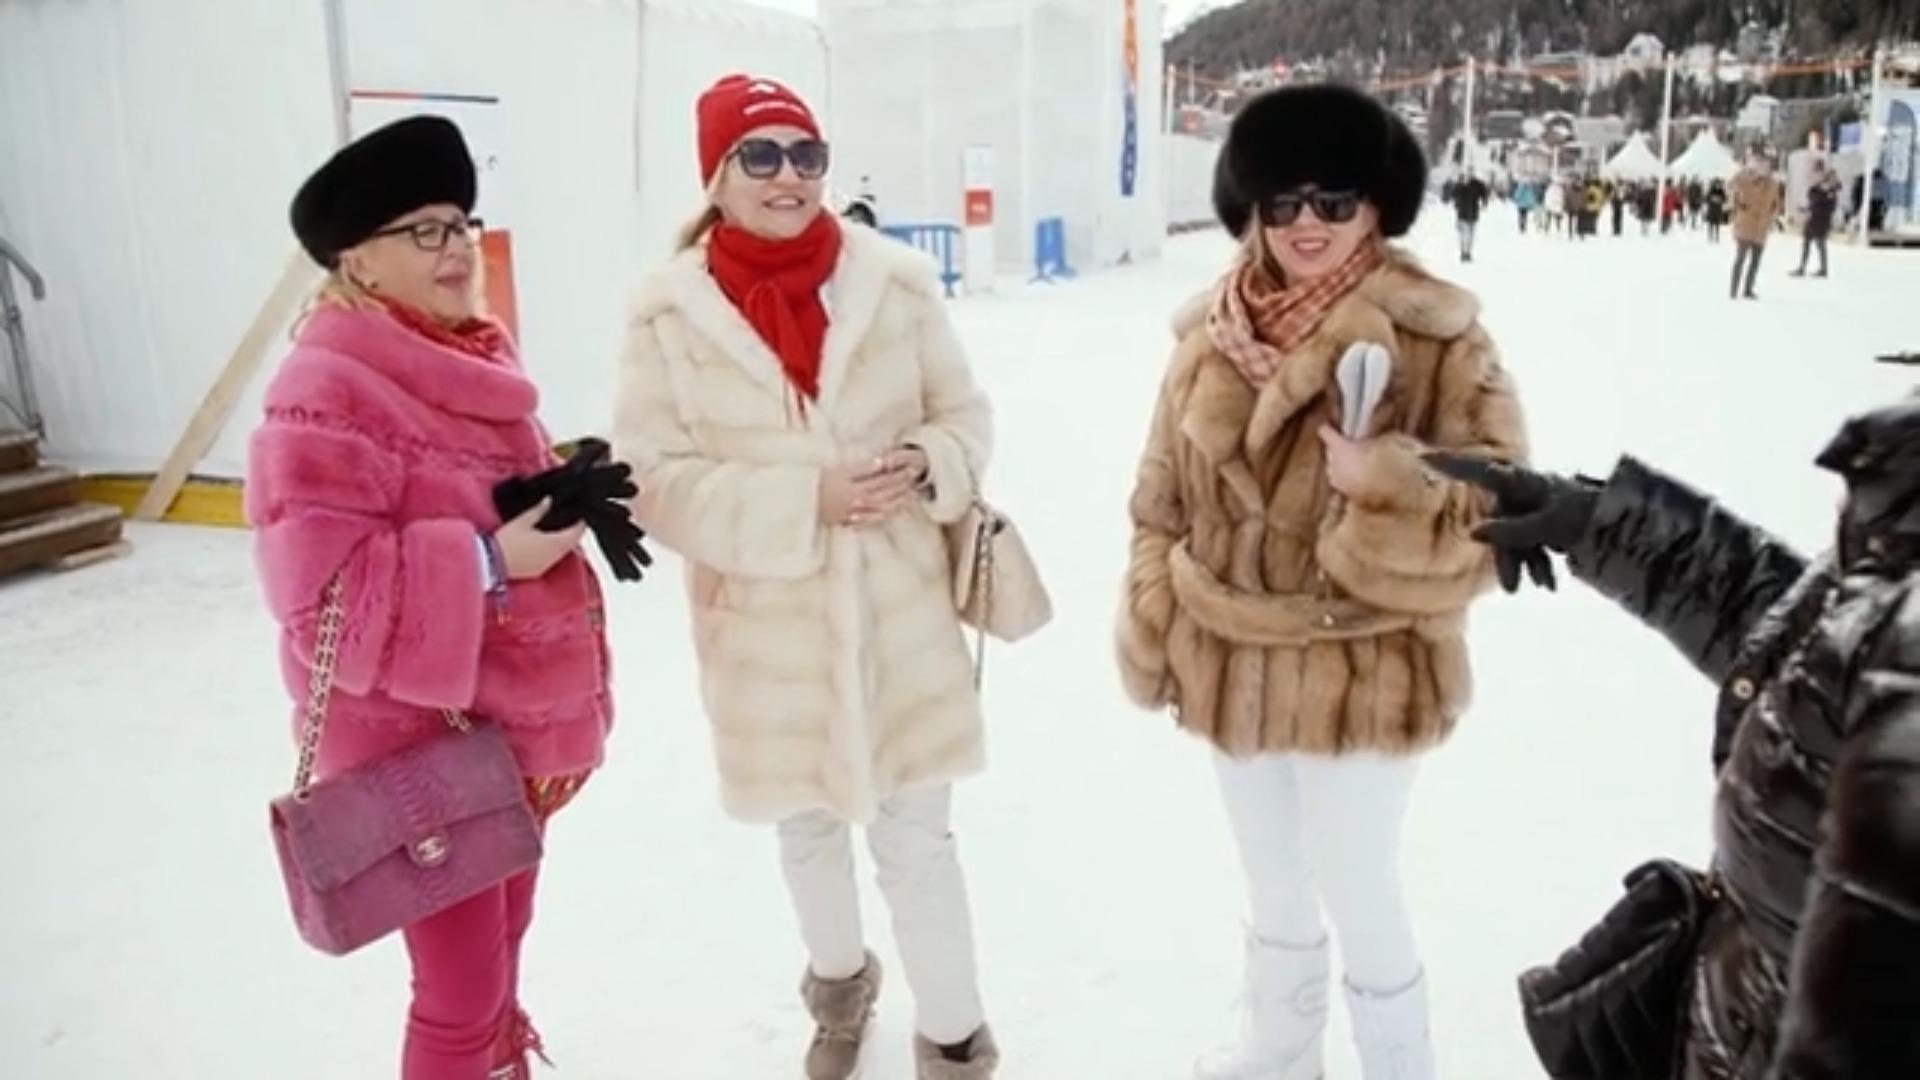 Snow Polo in St. Moritz Jetzt wird's pompös